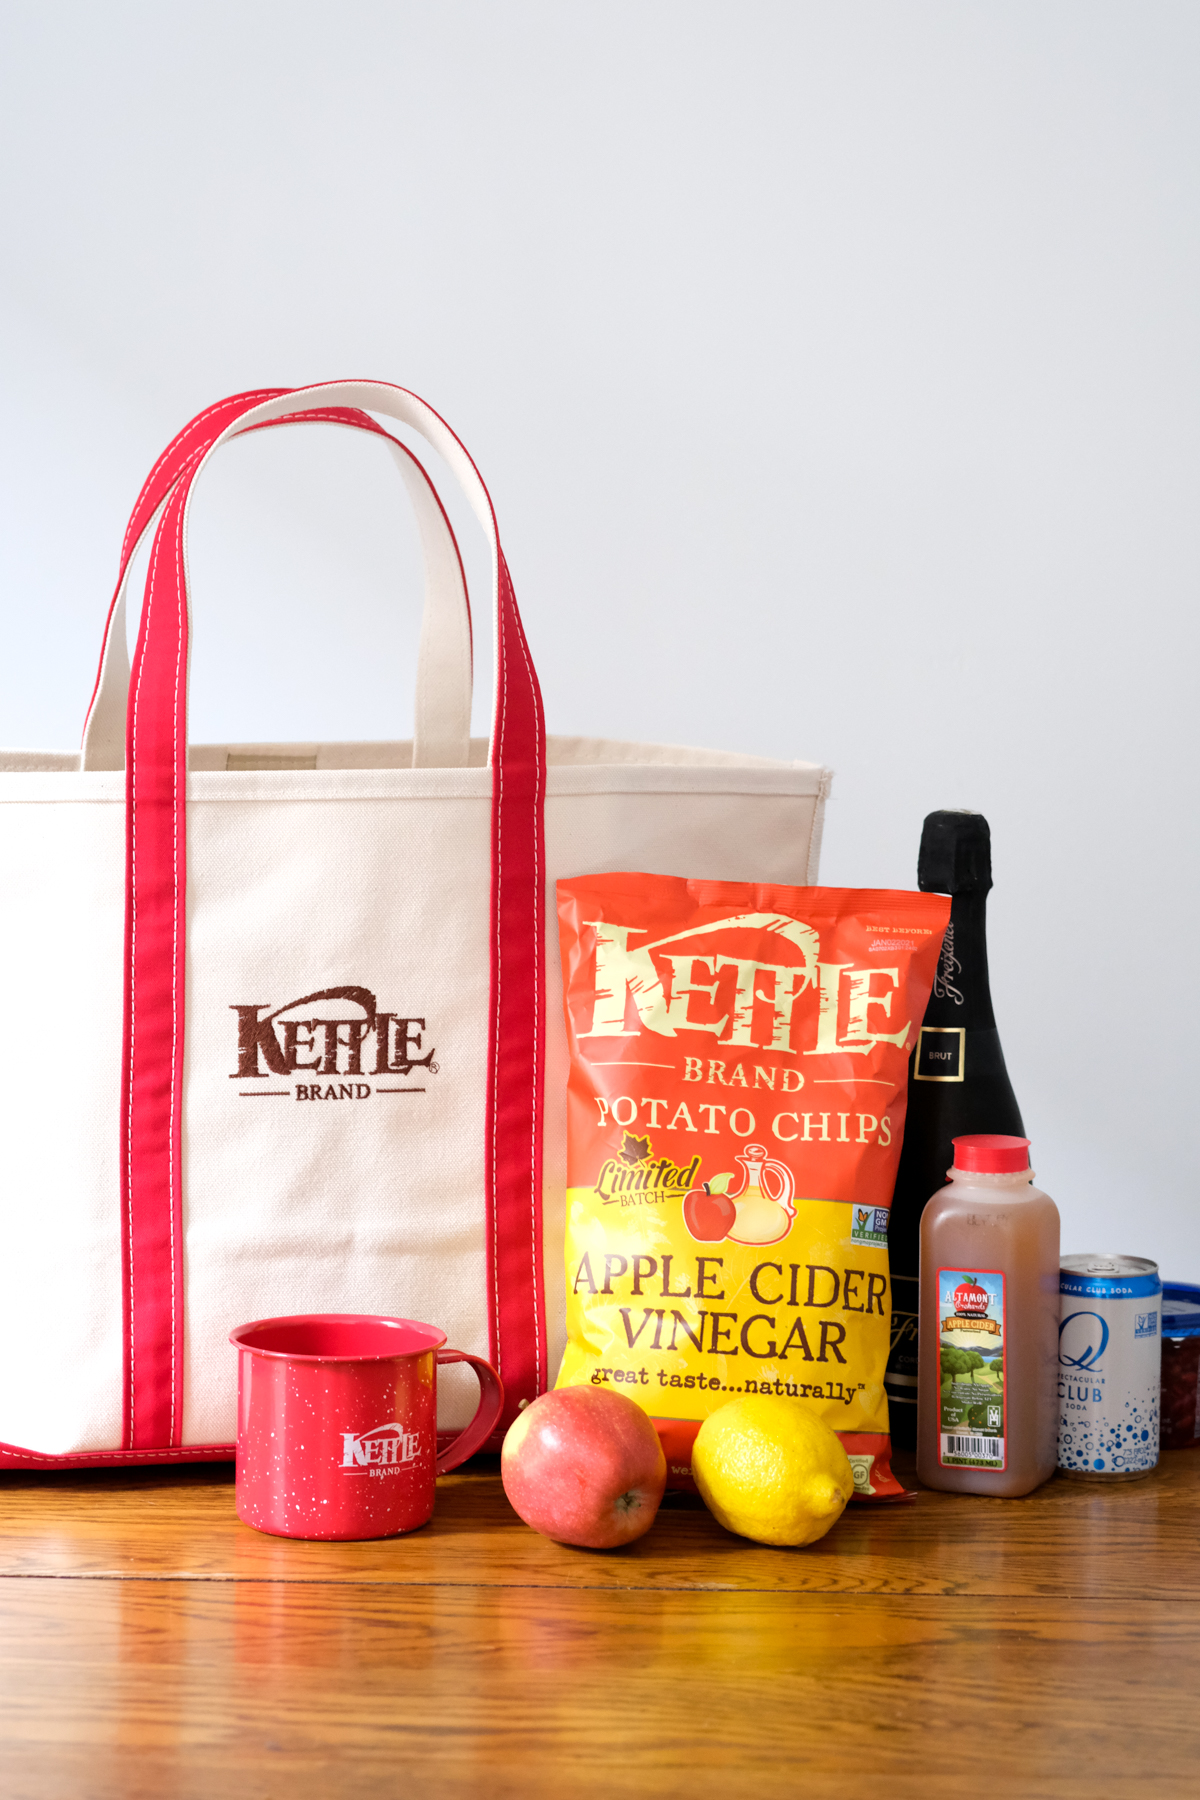 kettle brand apple cider vinegar chips with bag